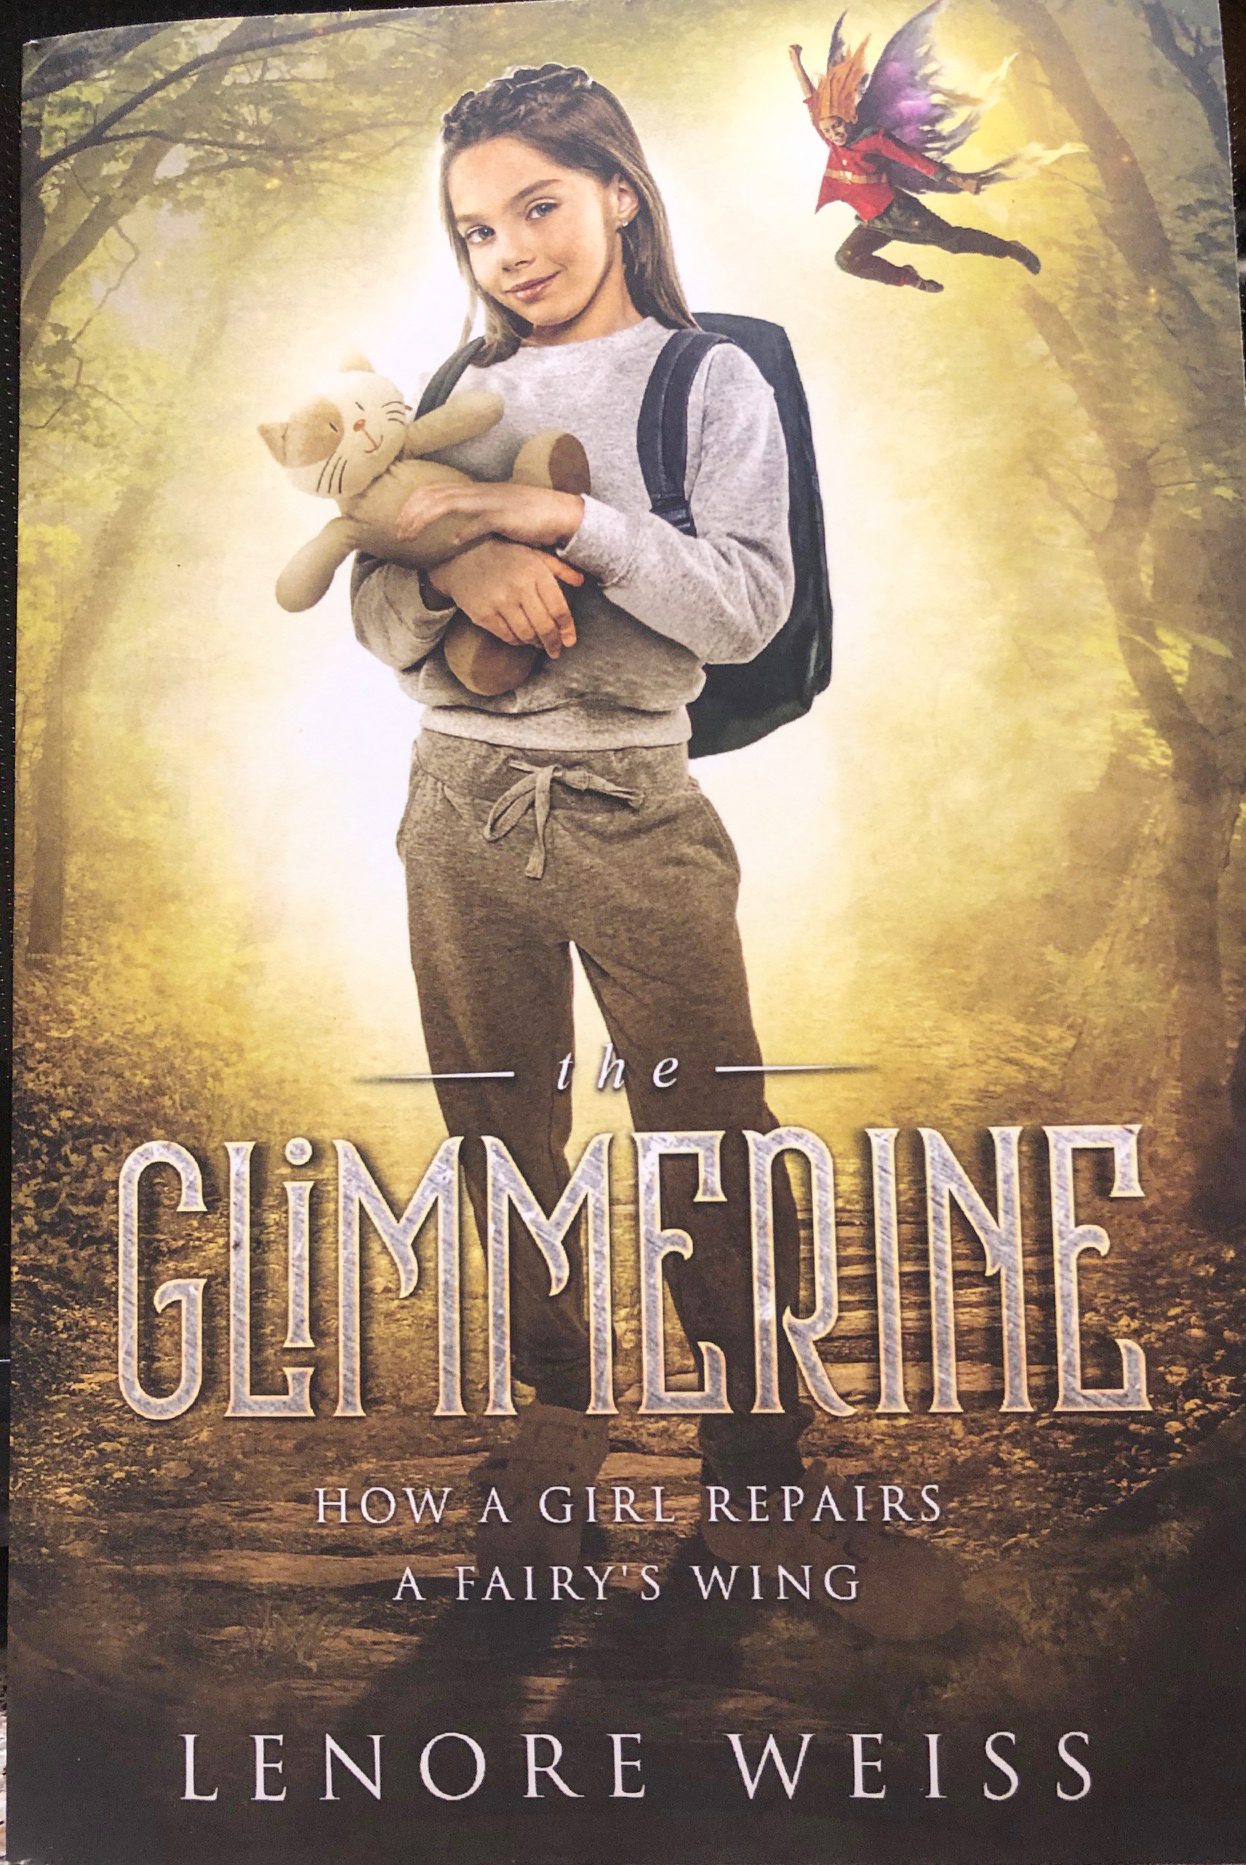 The Glimmerine